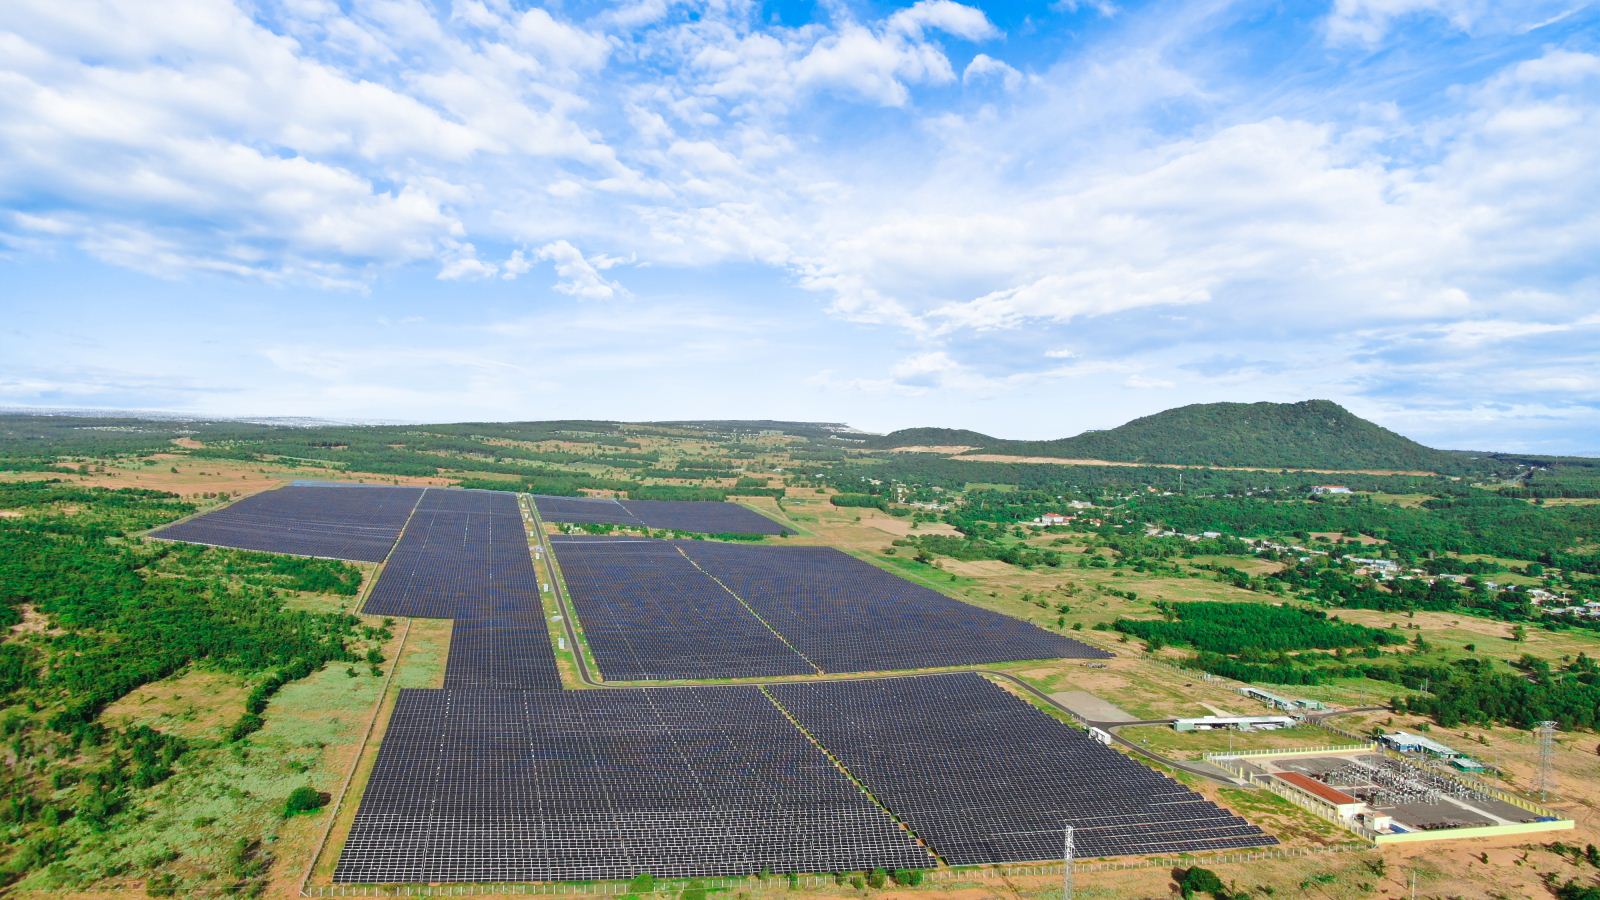 Dự án Điện mặt trời Hồng Phòng 4 được nhận giải thưởng  “Năng lượng bền vững 2019” do Bộ Công thương công bố